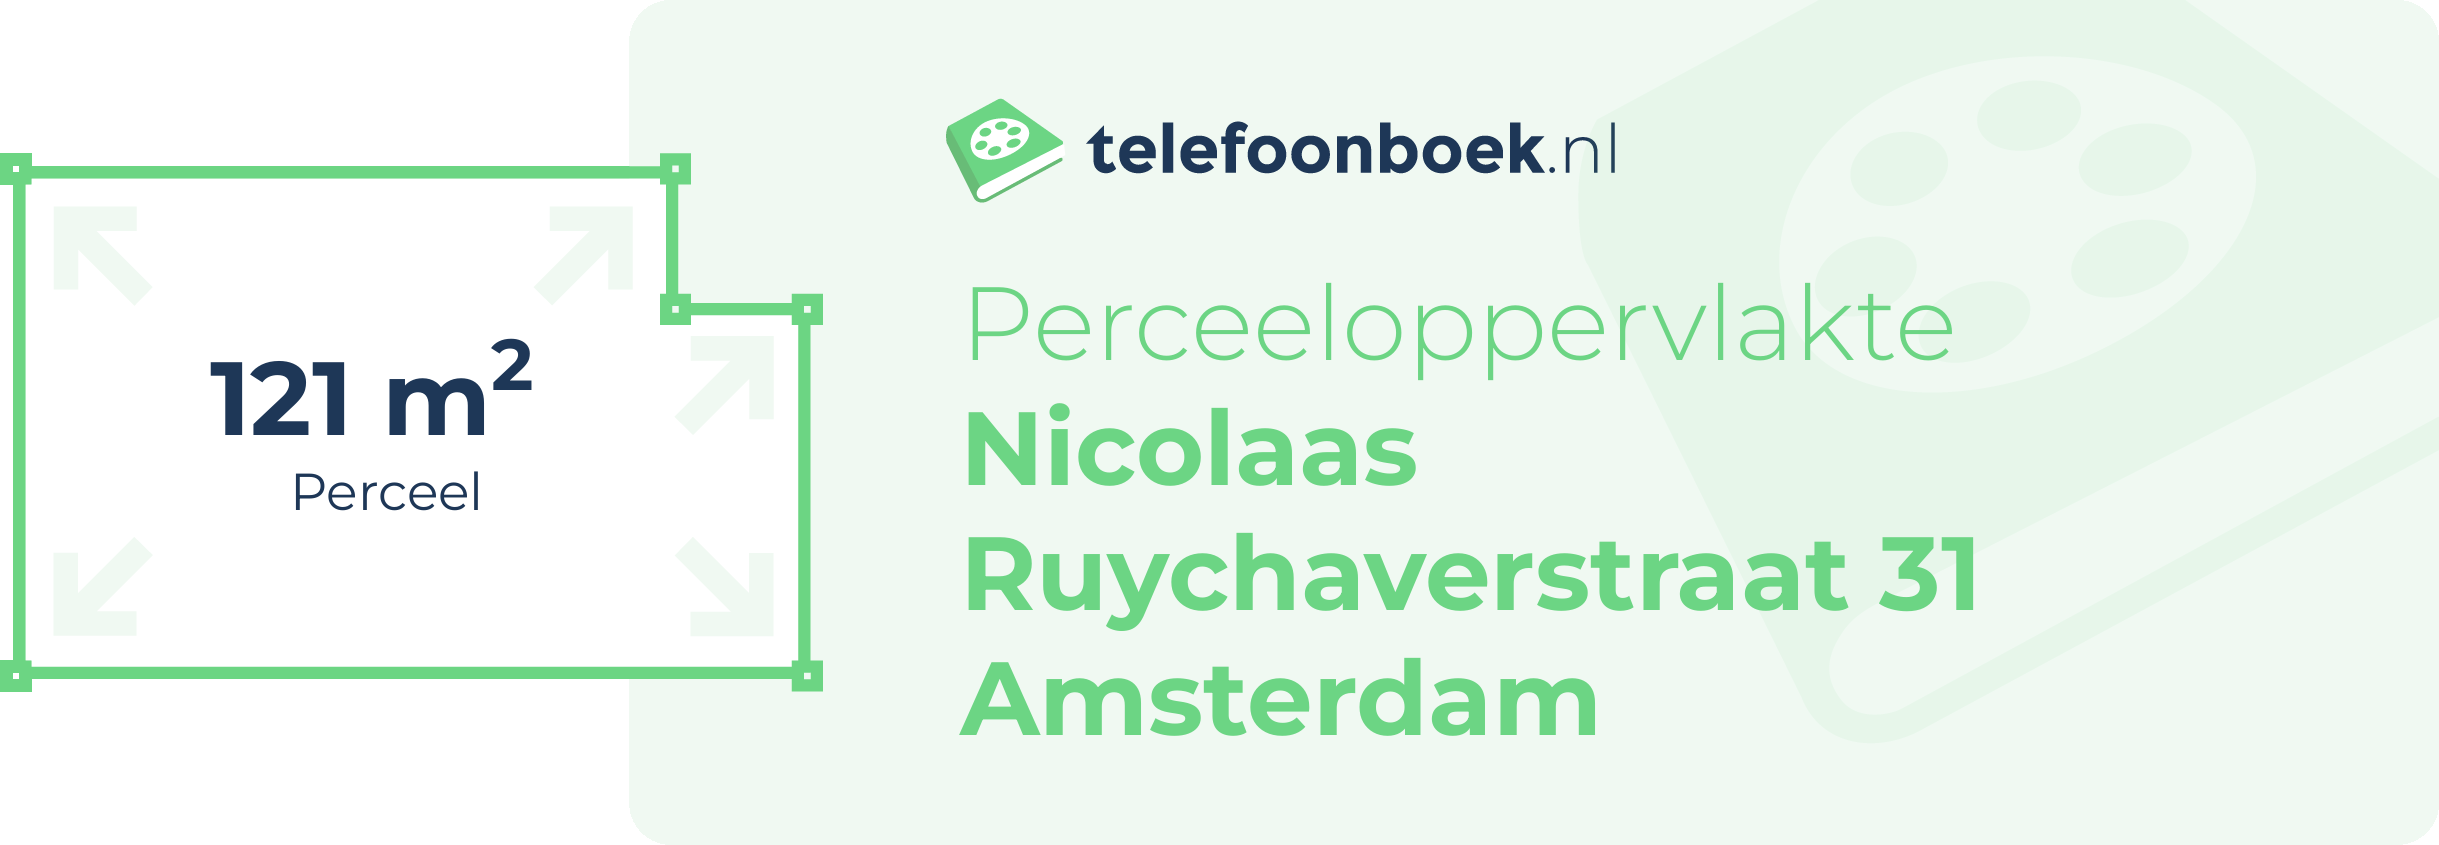 Perceeloppervlakte Nicolaas Ruychaverstraat 31 Amsterdam